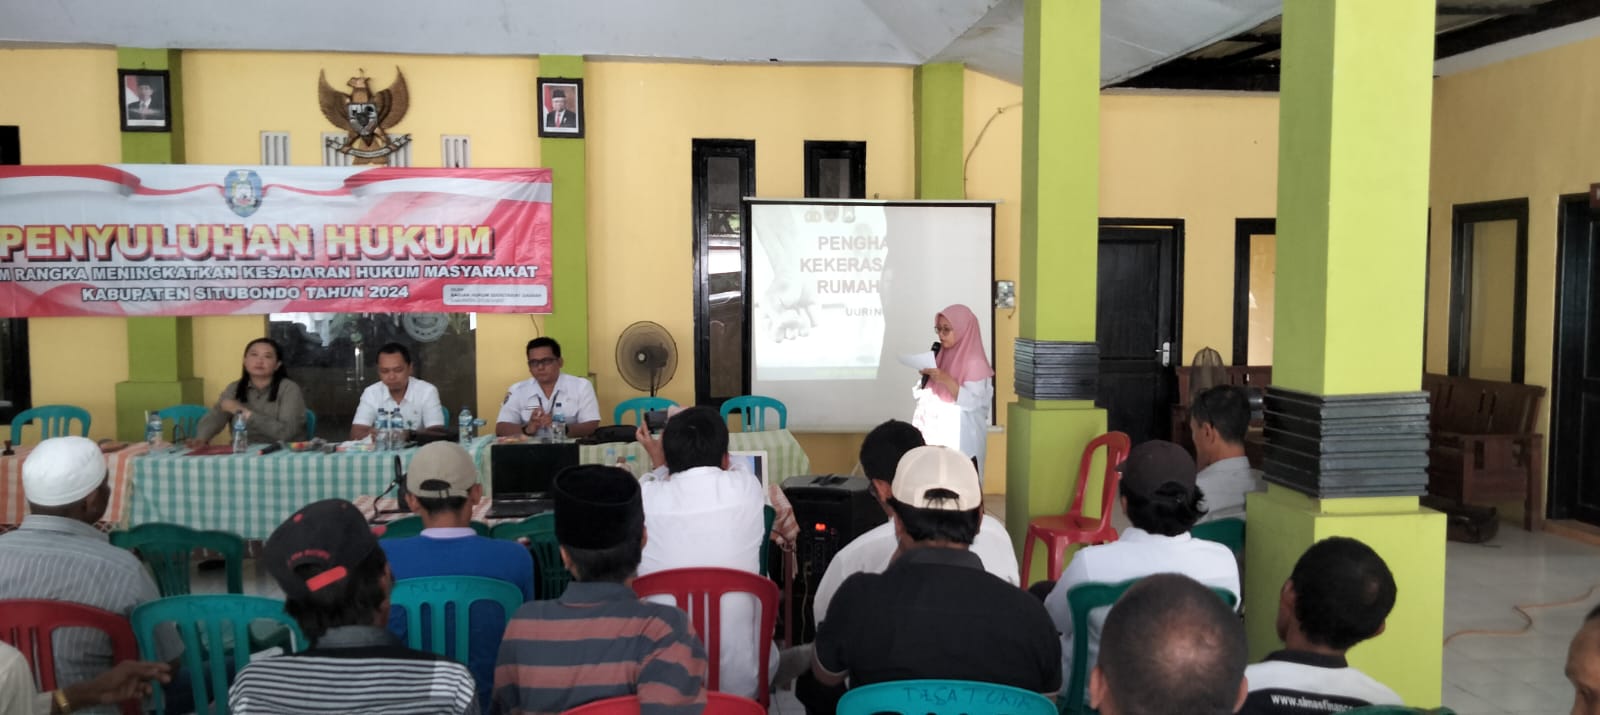 Kegiatan Penyuluhan Hukum di Desa Tambak Ukir Kecamatan Kendit Kabupaten Situbondo Tahun 2024